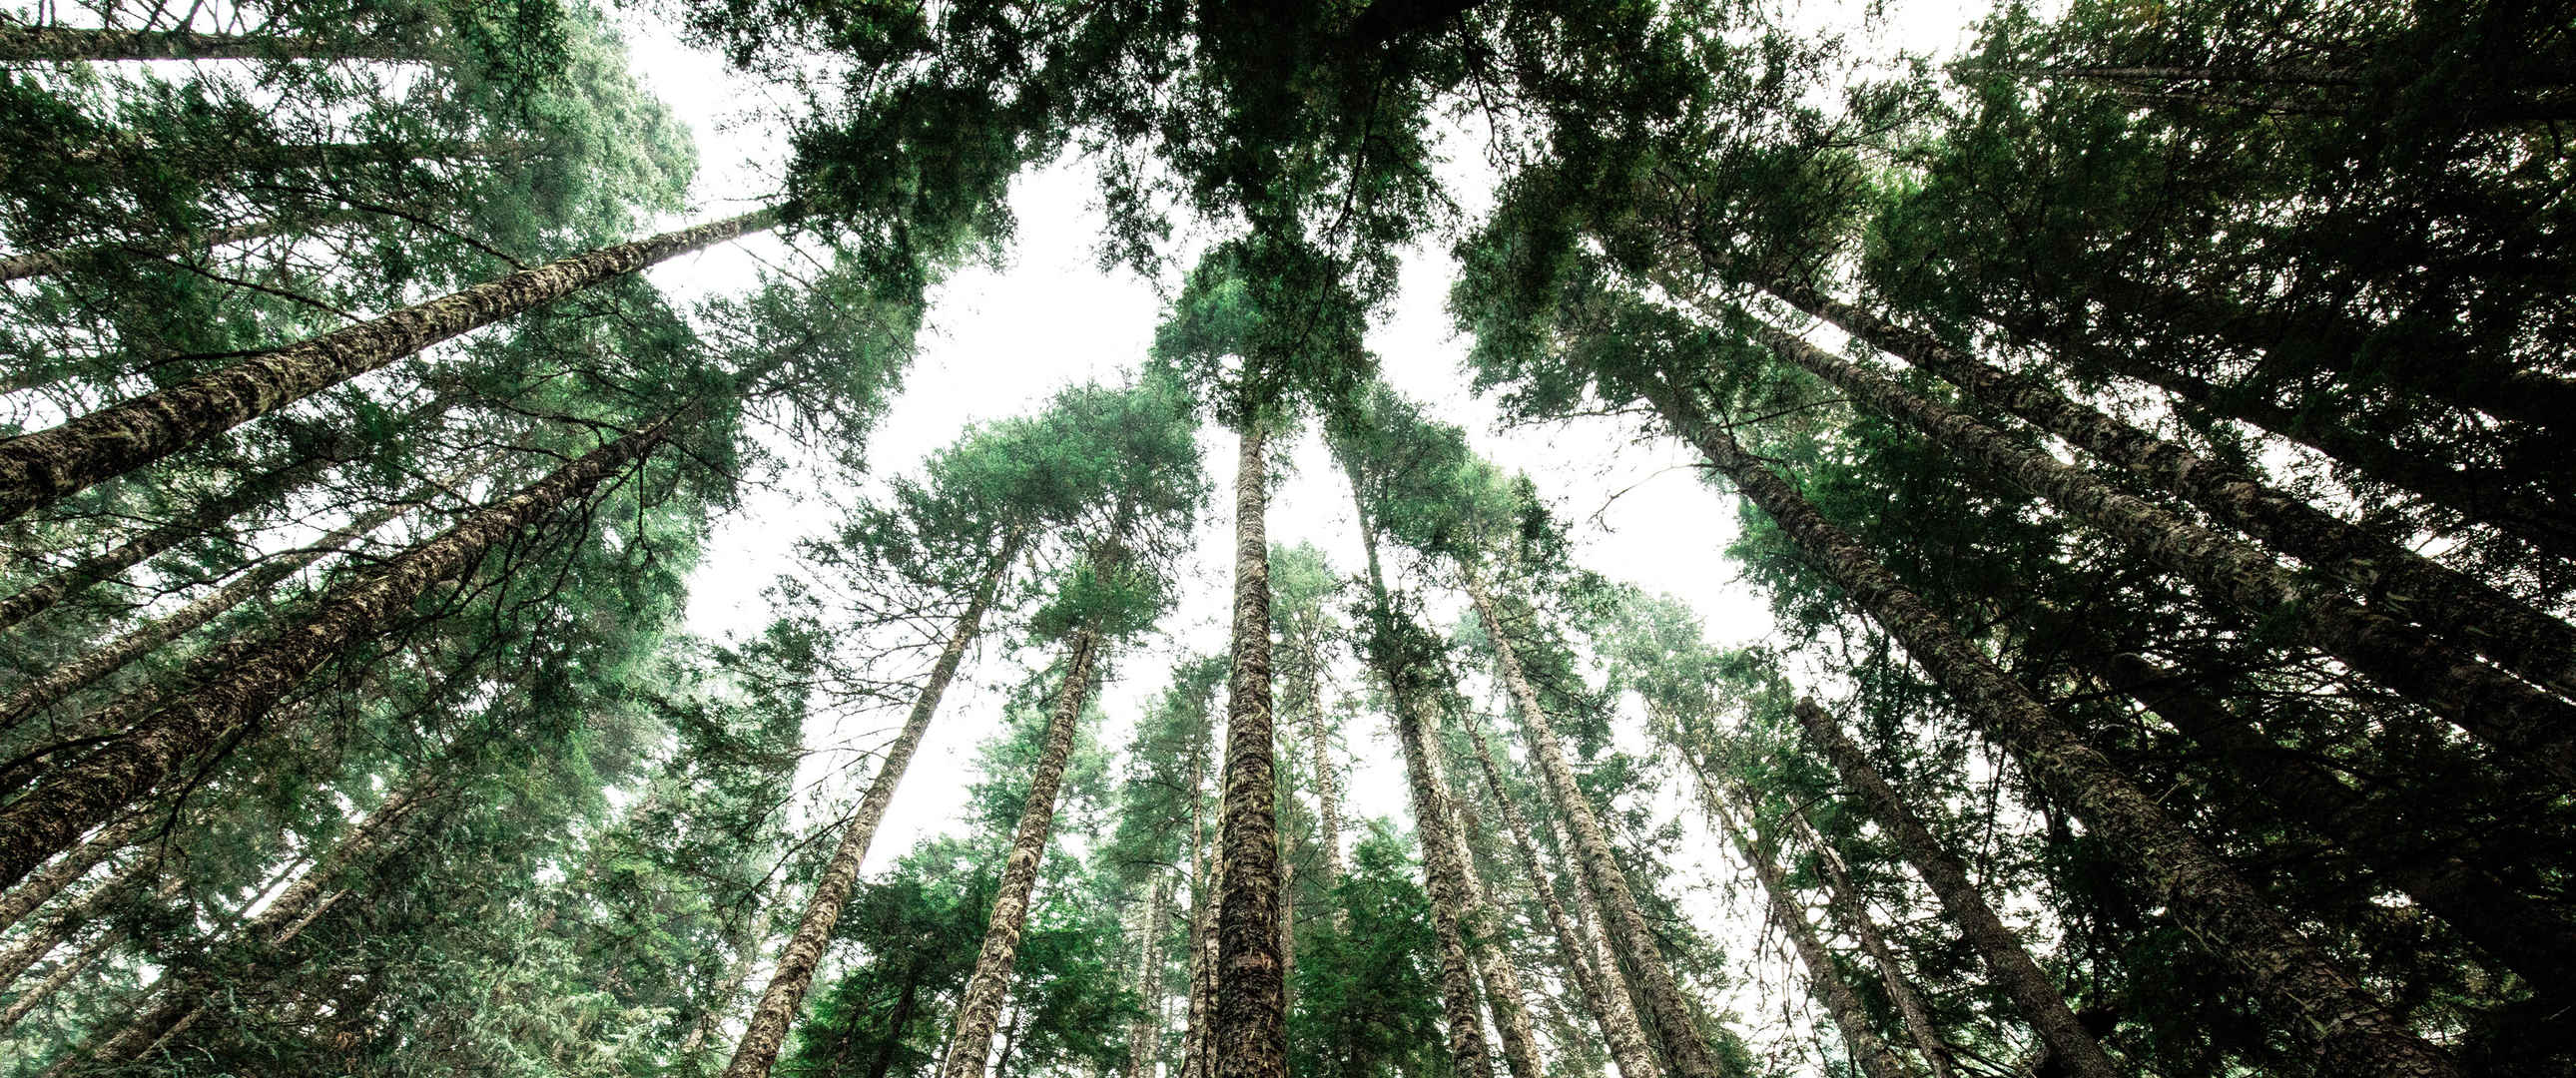 原始森林绿色高大树木3440x1440风景壁纸